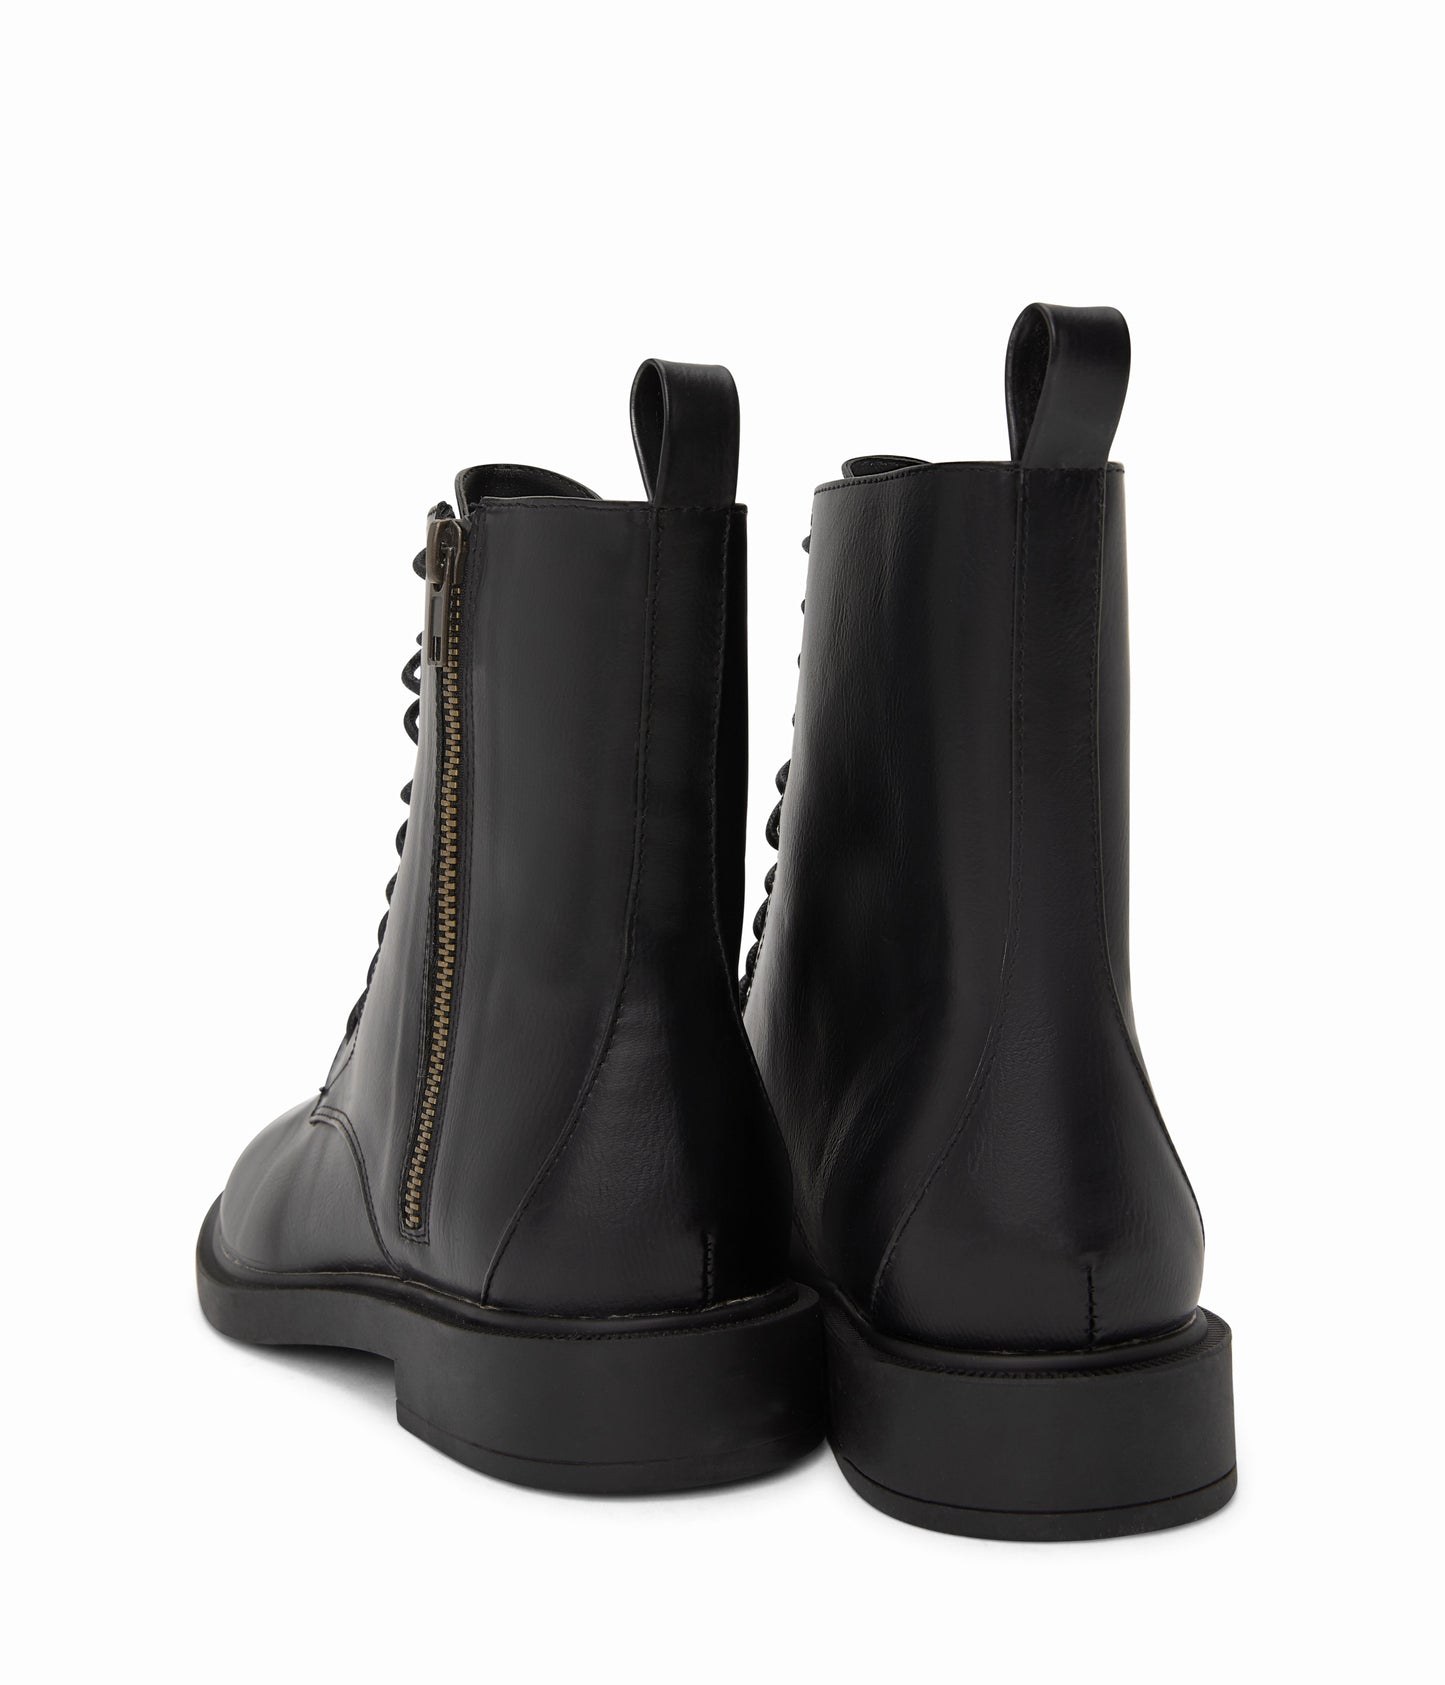 variant:: noir -- morton shoe noir